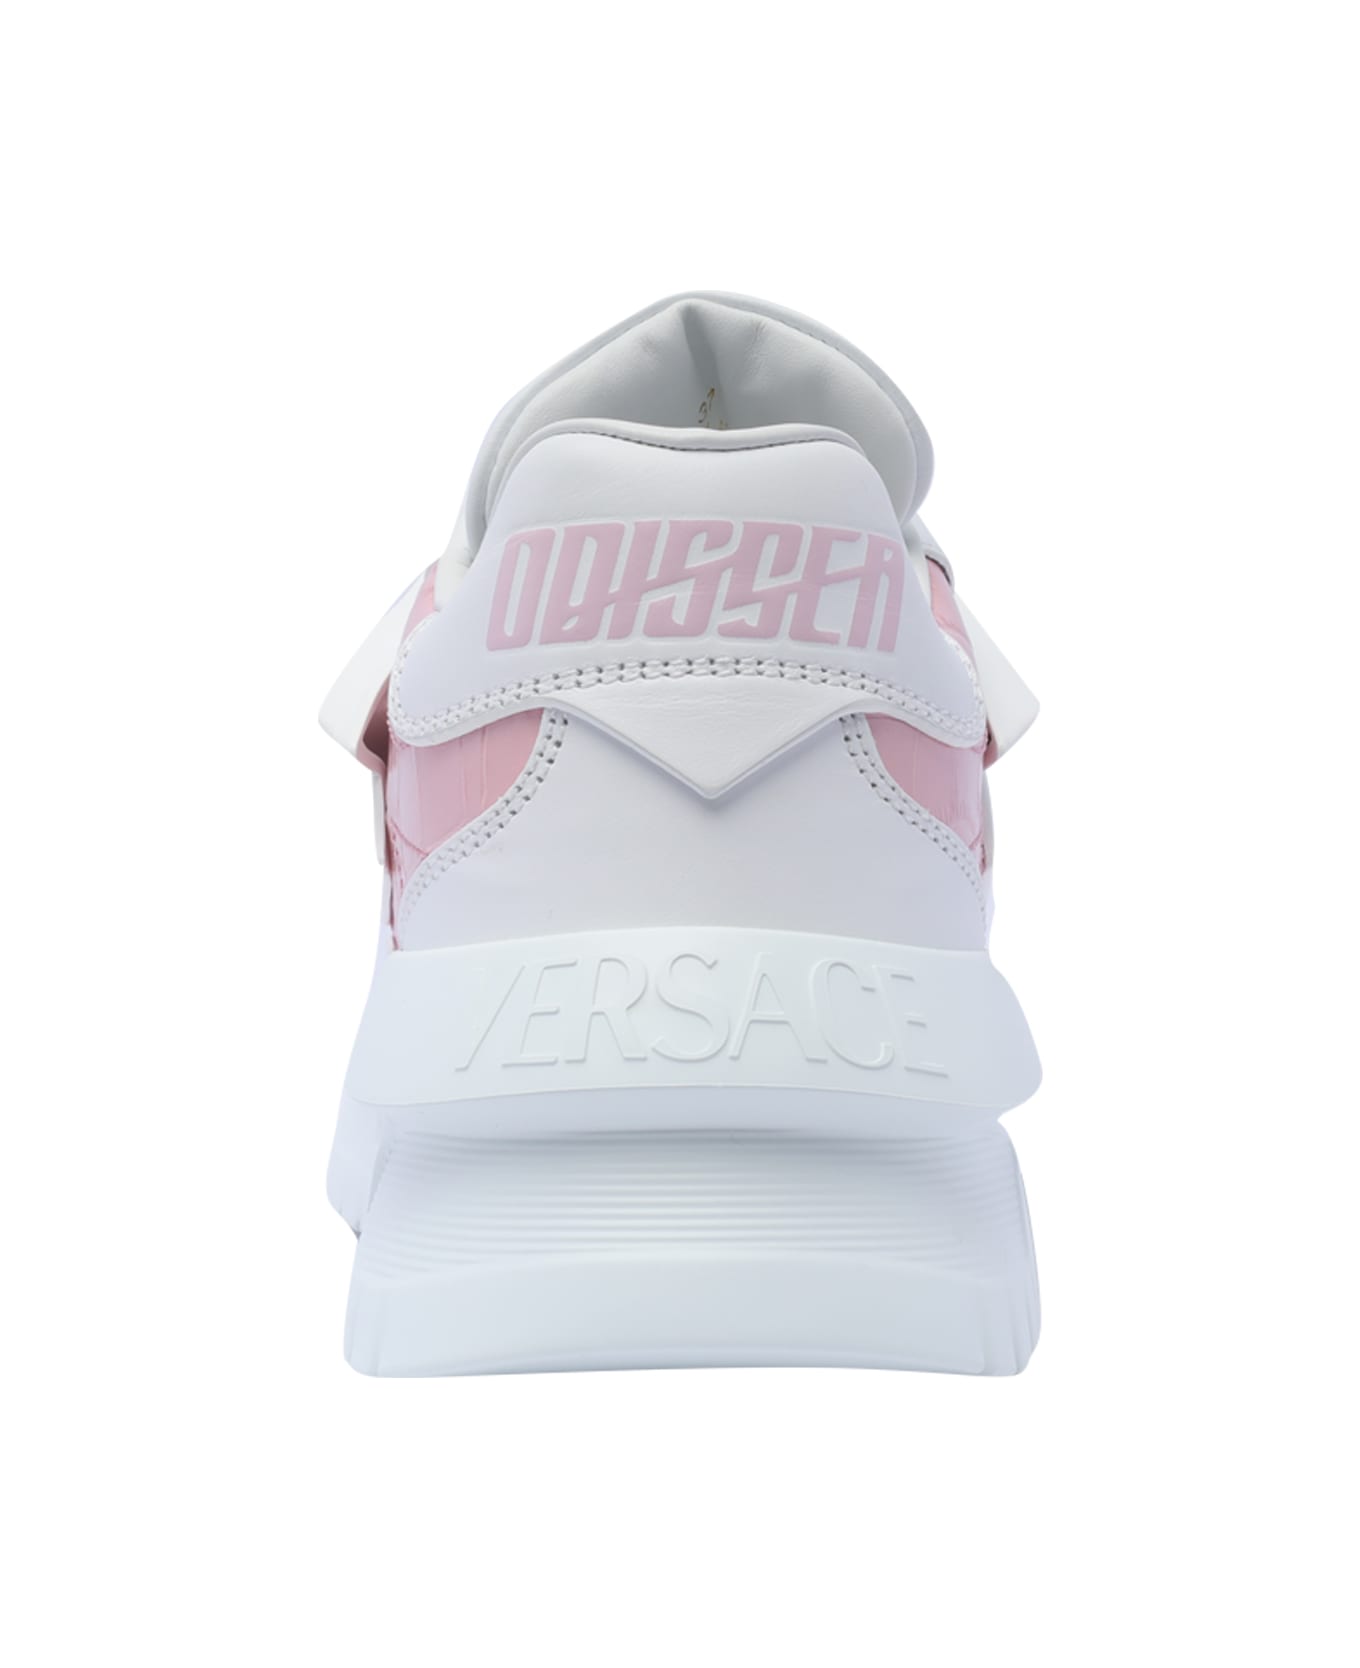 Versace Odissea Sneakers - Pink スニーカー